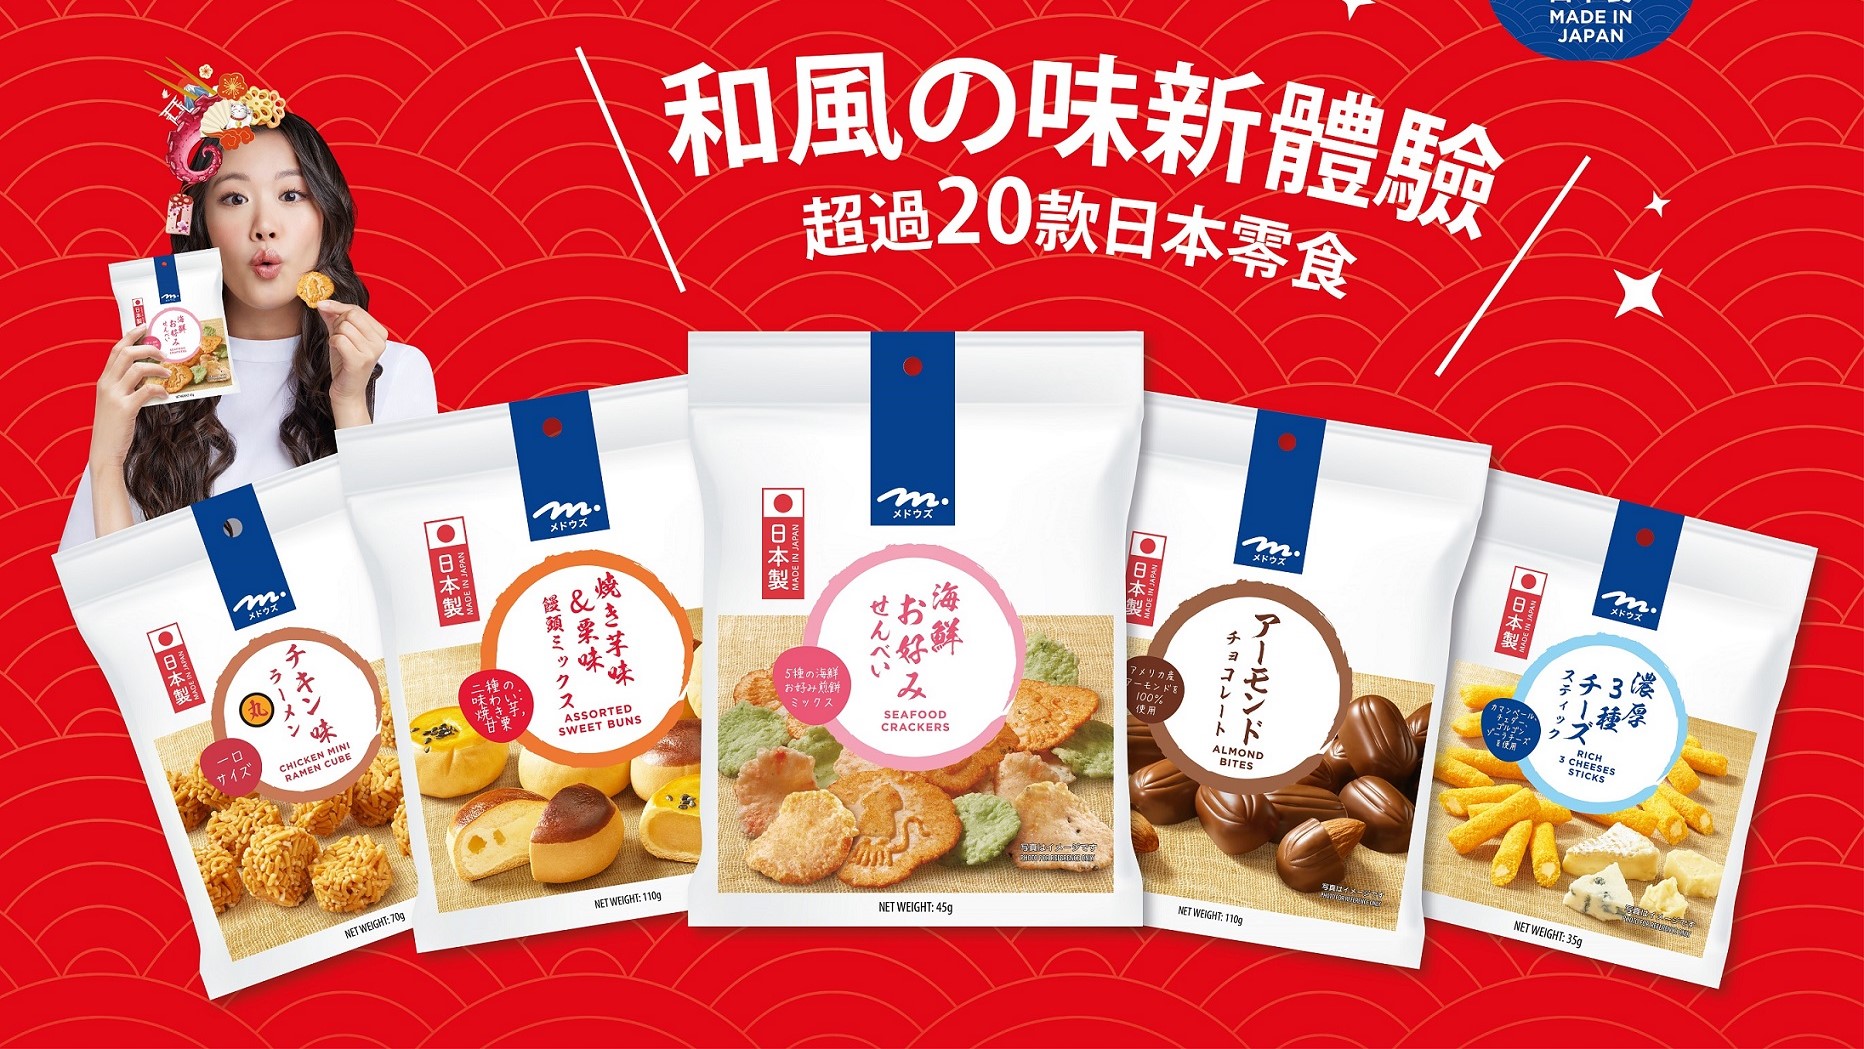 【美食】Meadows日本零食系列 新登場全線8折優惠